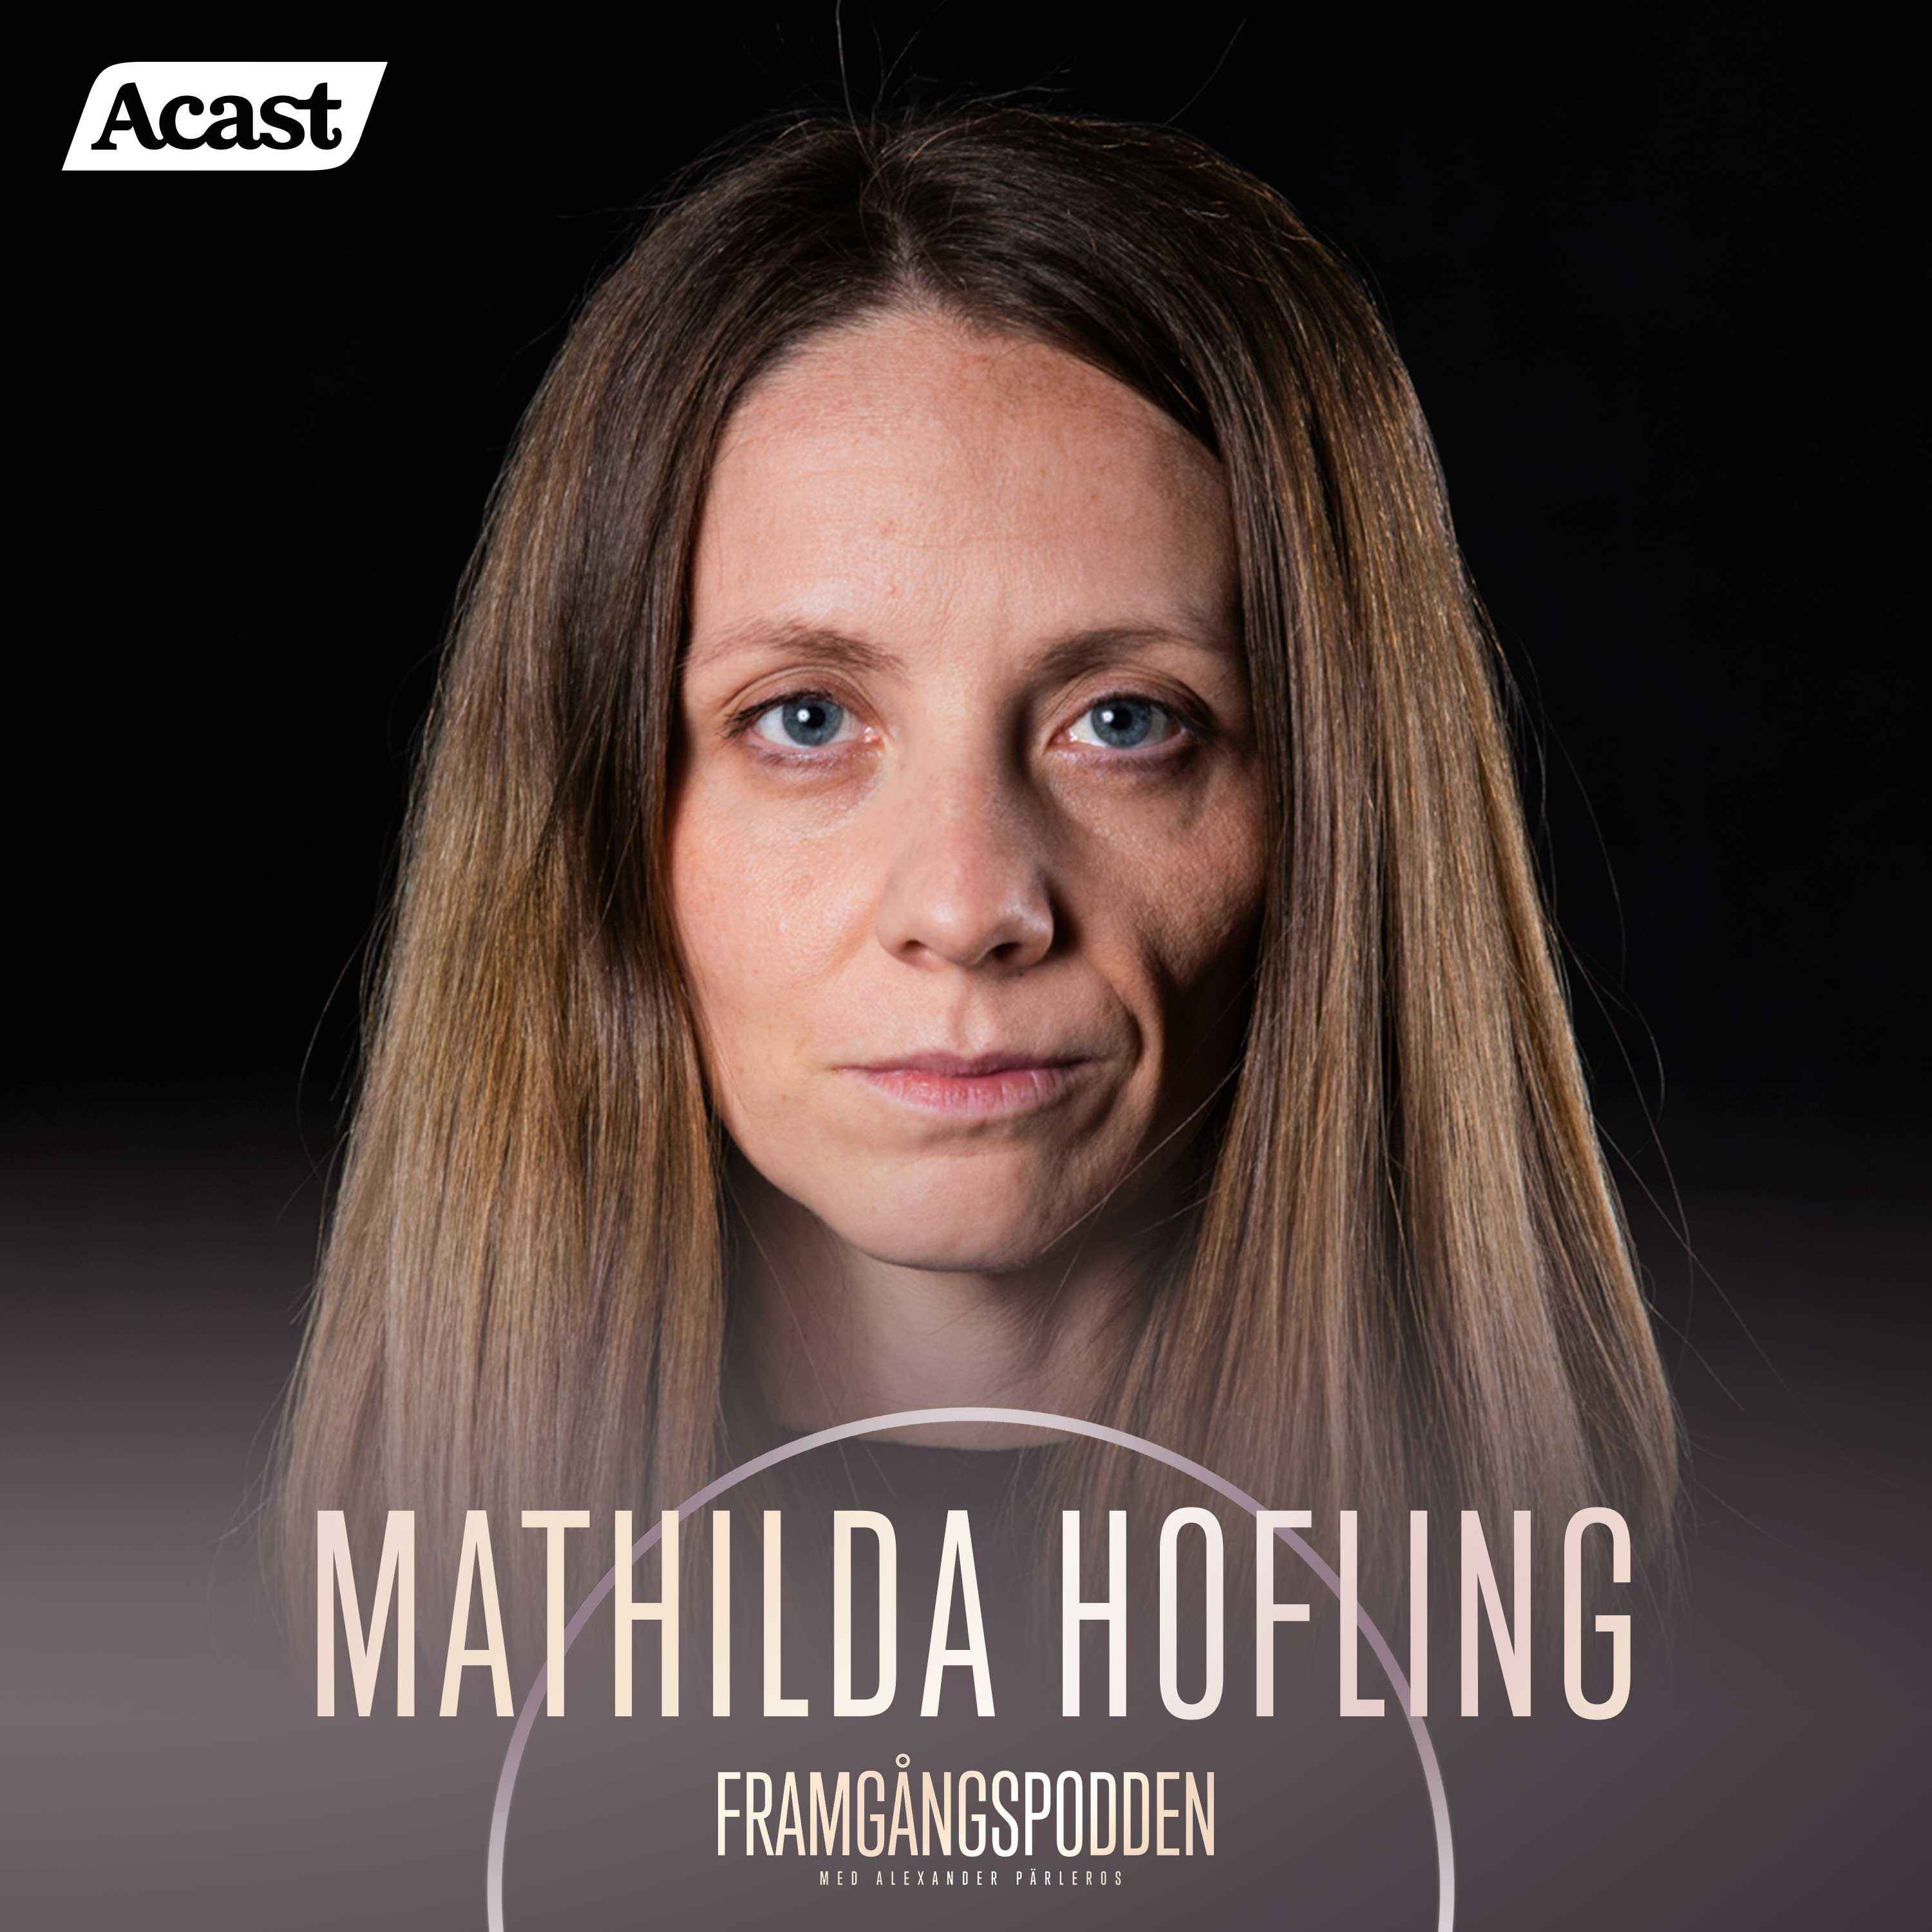 622. Mathilda Hofling - Utsatt för grooming, sexuella övergrepp & prostitution, Short